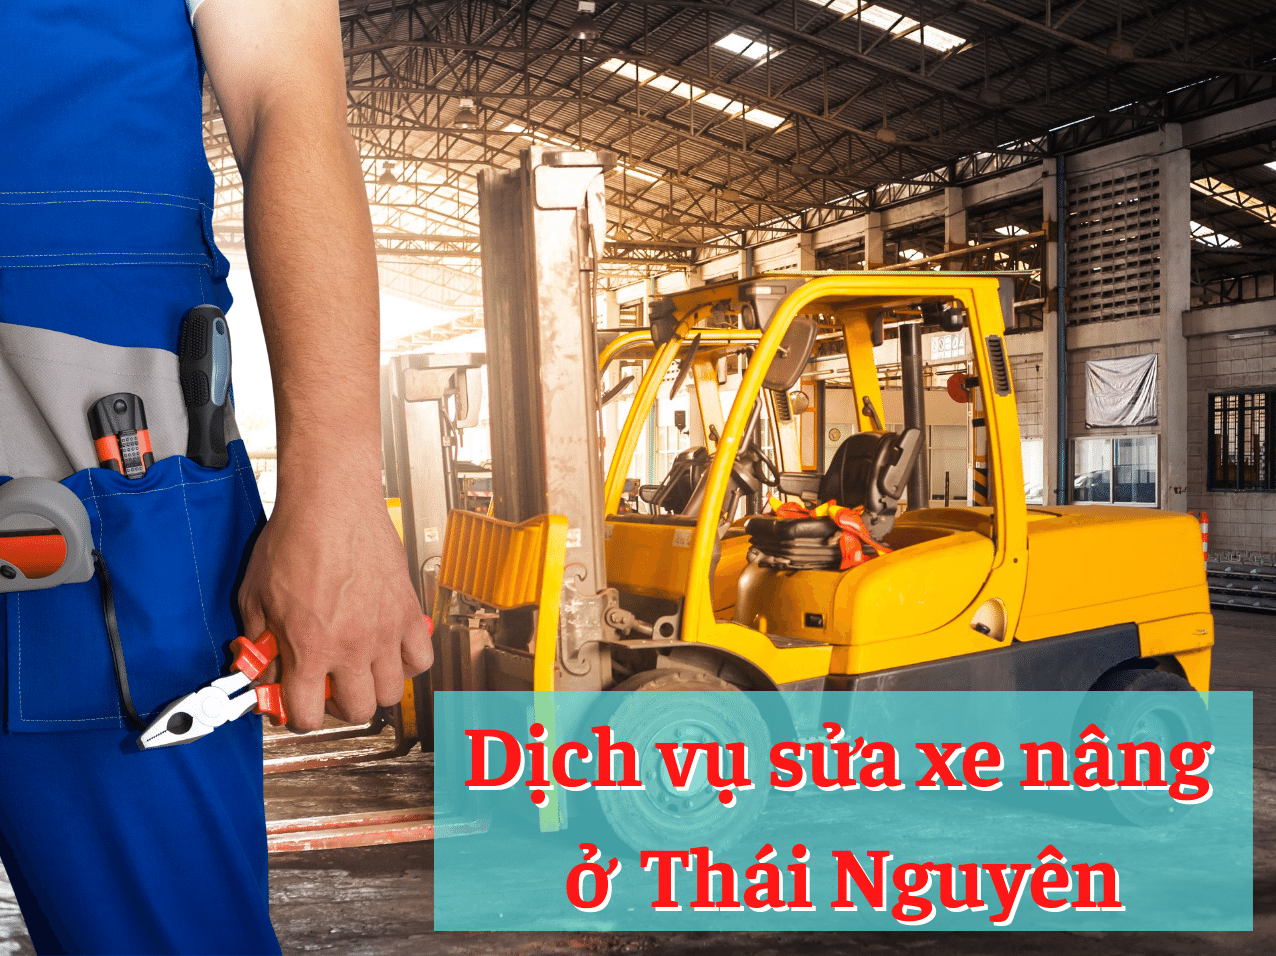 Sửa xe nâng ở Thái Nguyên – Dịch vụ hỗ trợ 24/7